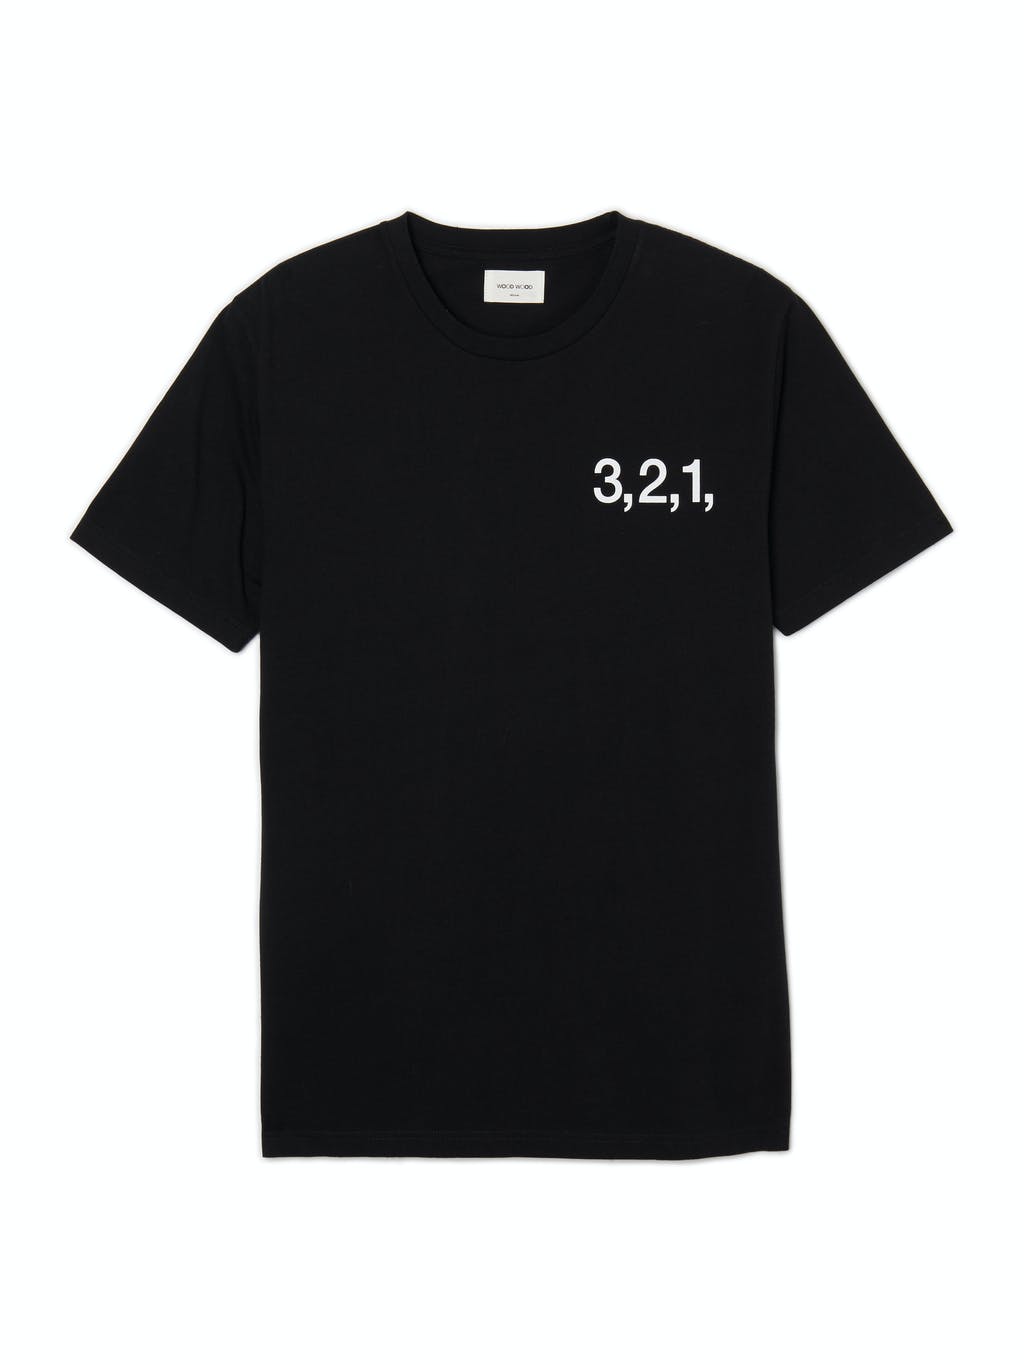 3-2-1 Crewneck T-Shirt